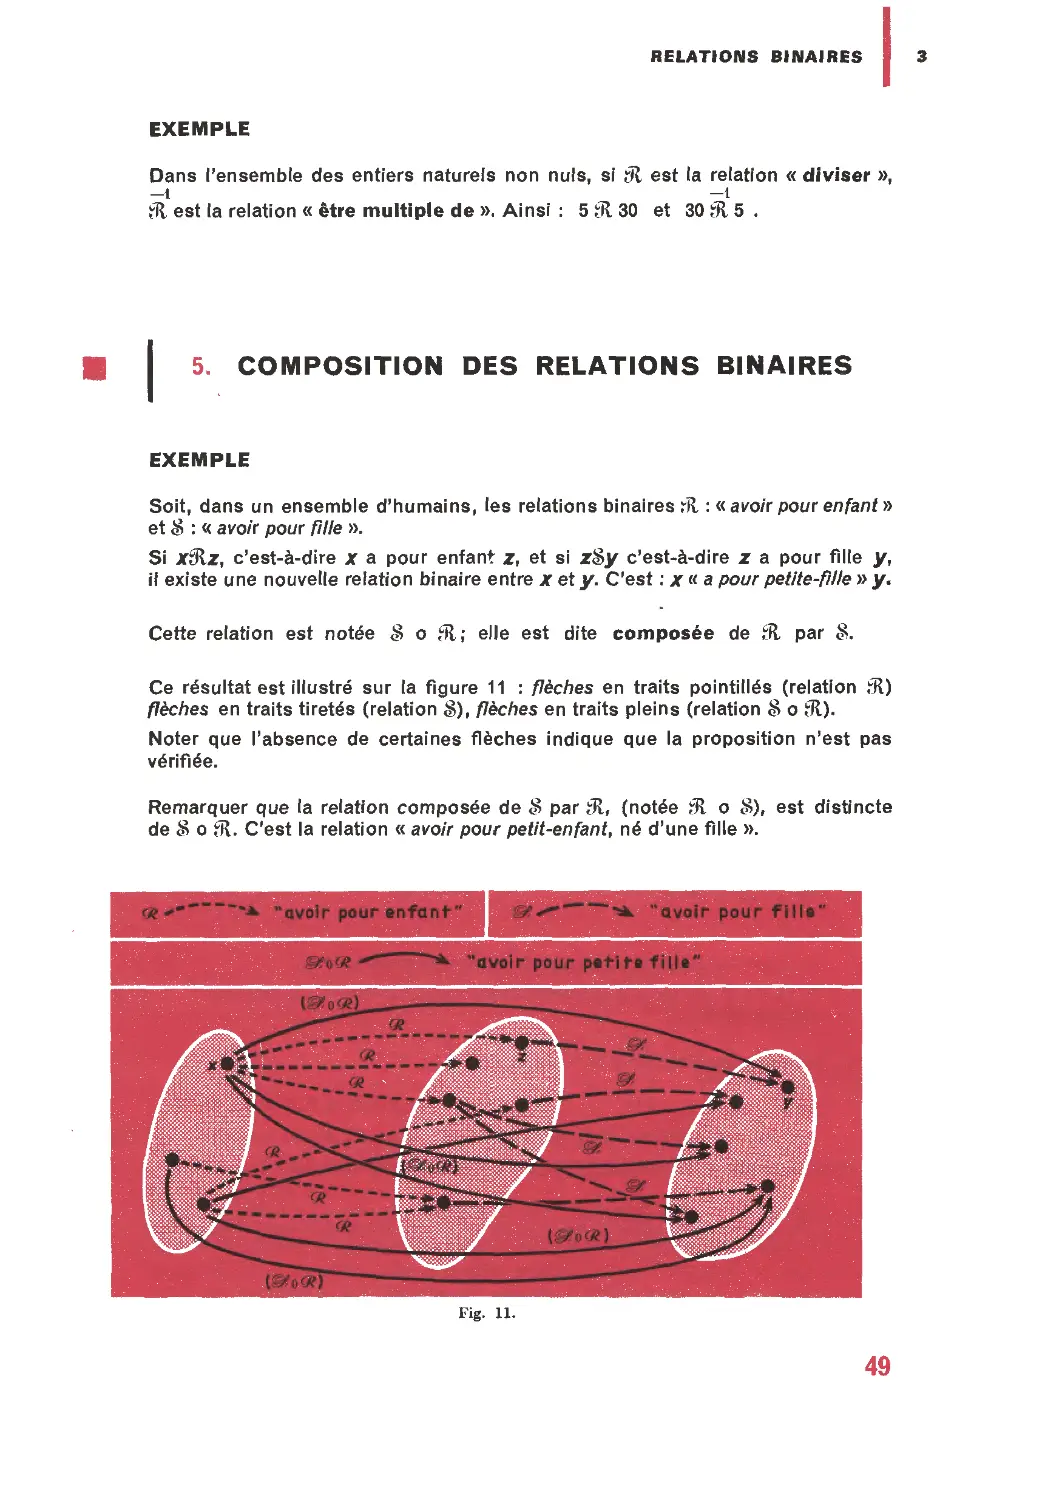 5. Composition des relations binaires